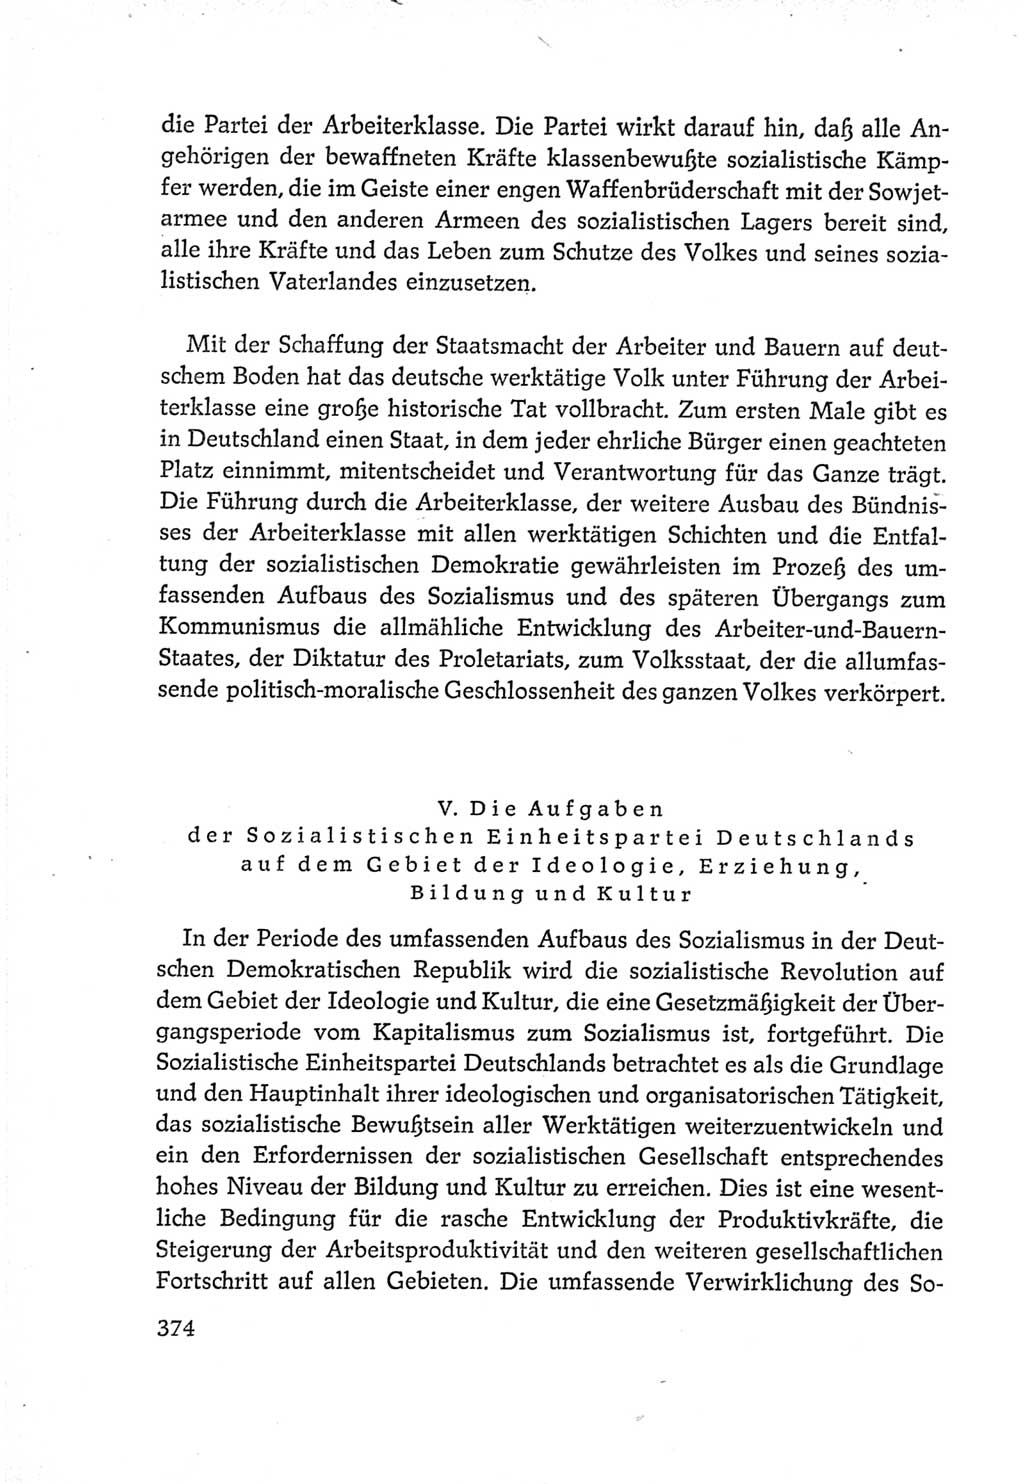 Protokoll der Verhandlungen des Ⅵ. Parteitages der Sozialistischen Einheitspartei Deutschlands (SED) [Deutsche Demokratische Republik (DDR)] 1963, Band Ⅳ, Seite 374 (Prot. Verh. Ⅵ. PT SED DDR 1963, Bd. Ⅳ, S. 374)